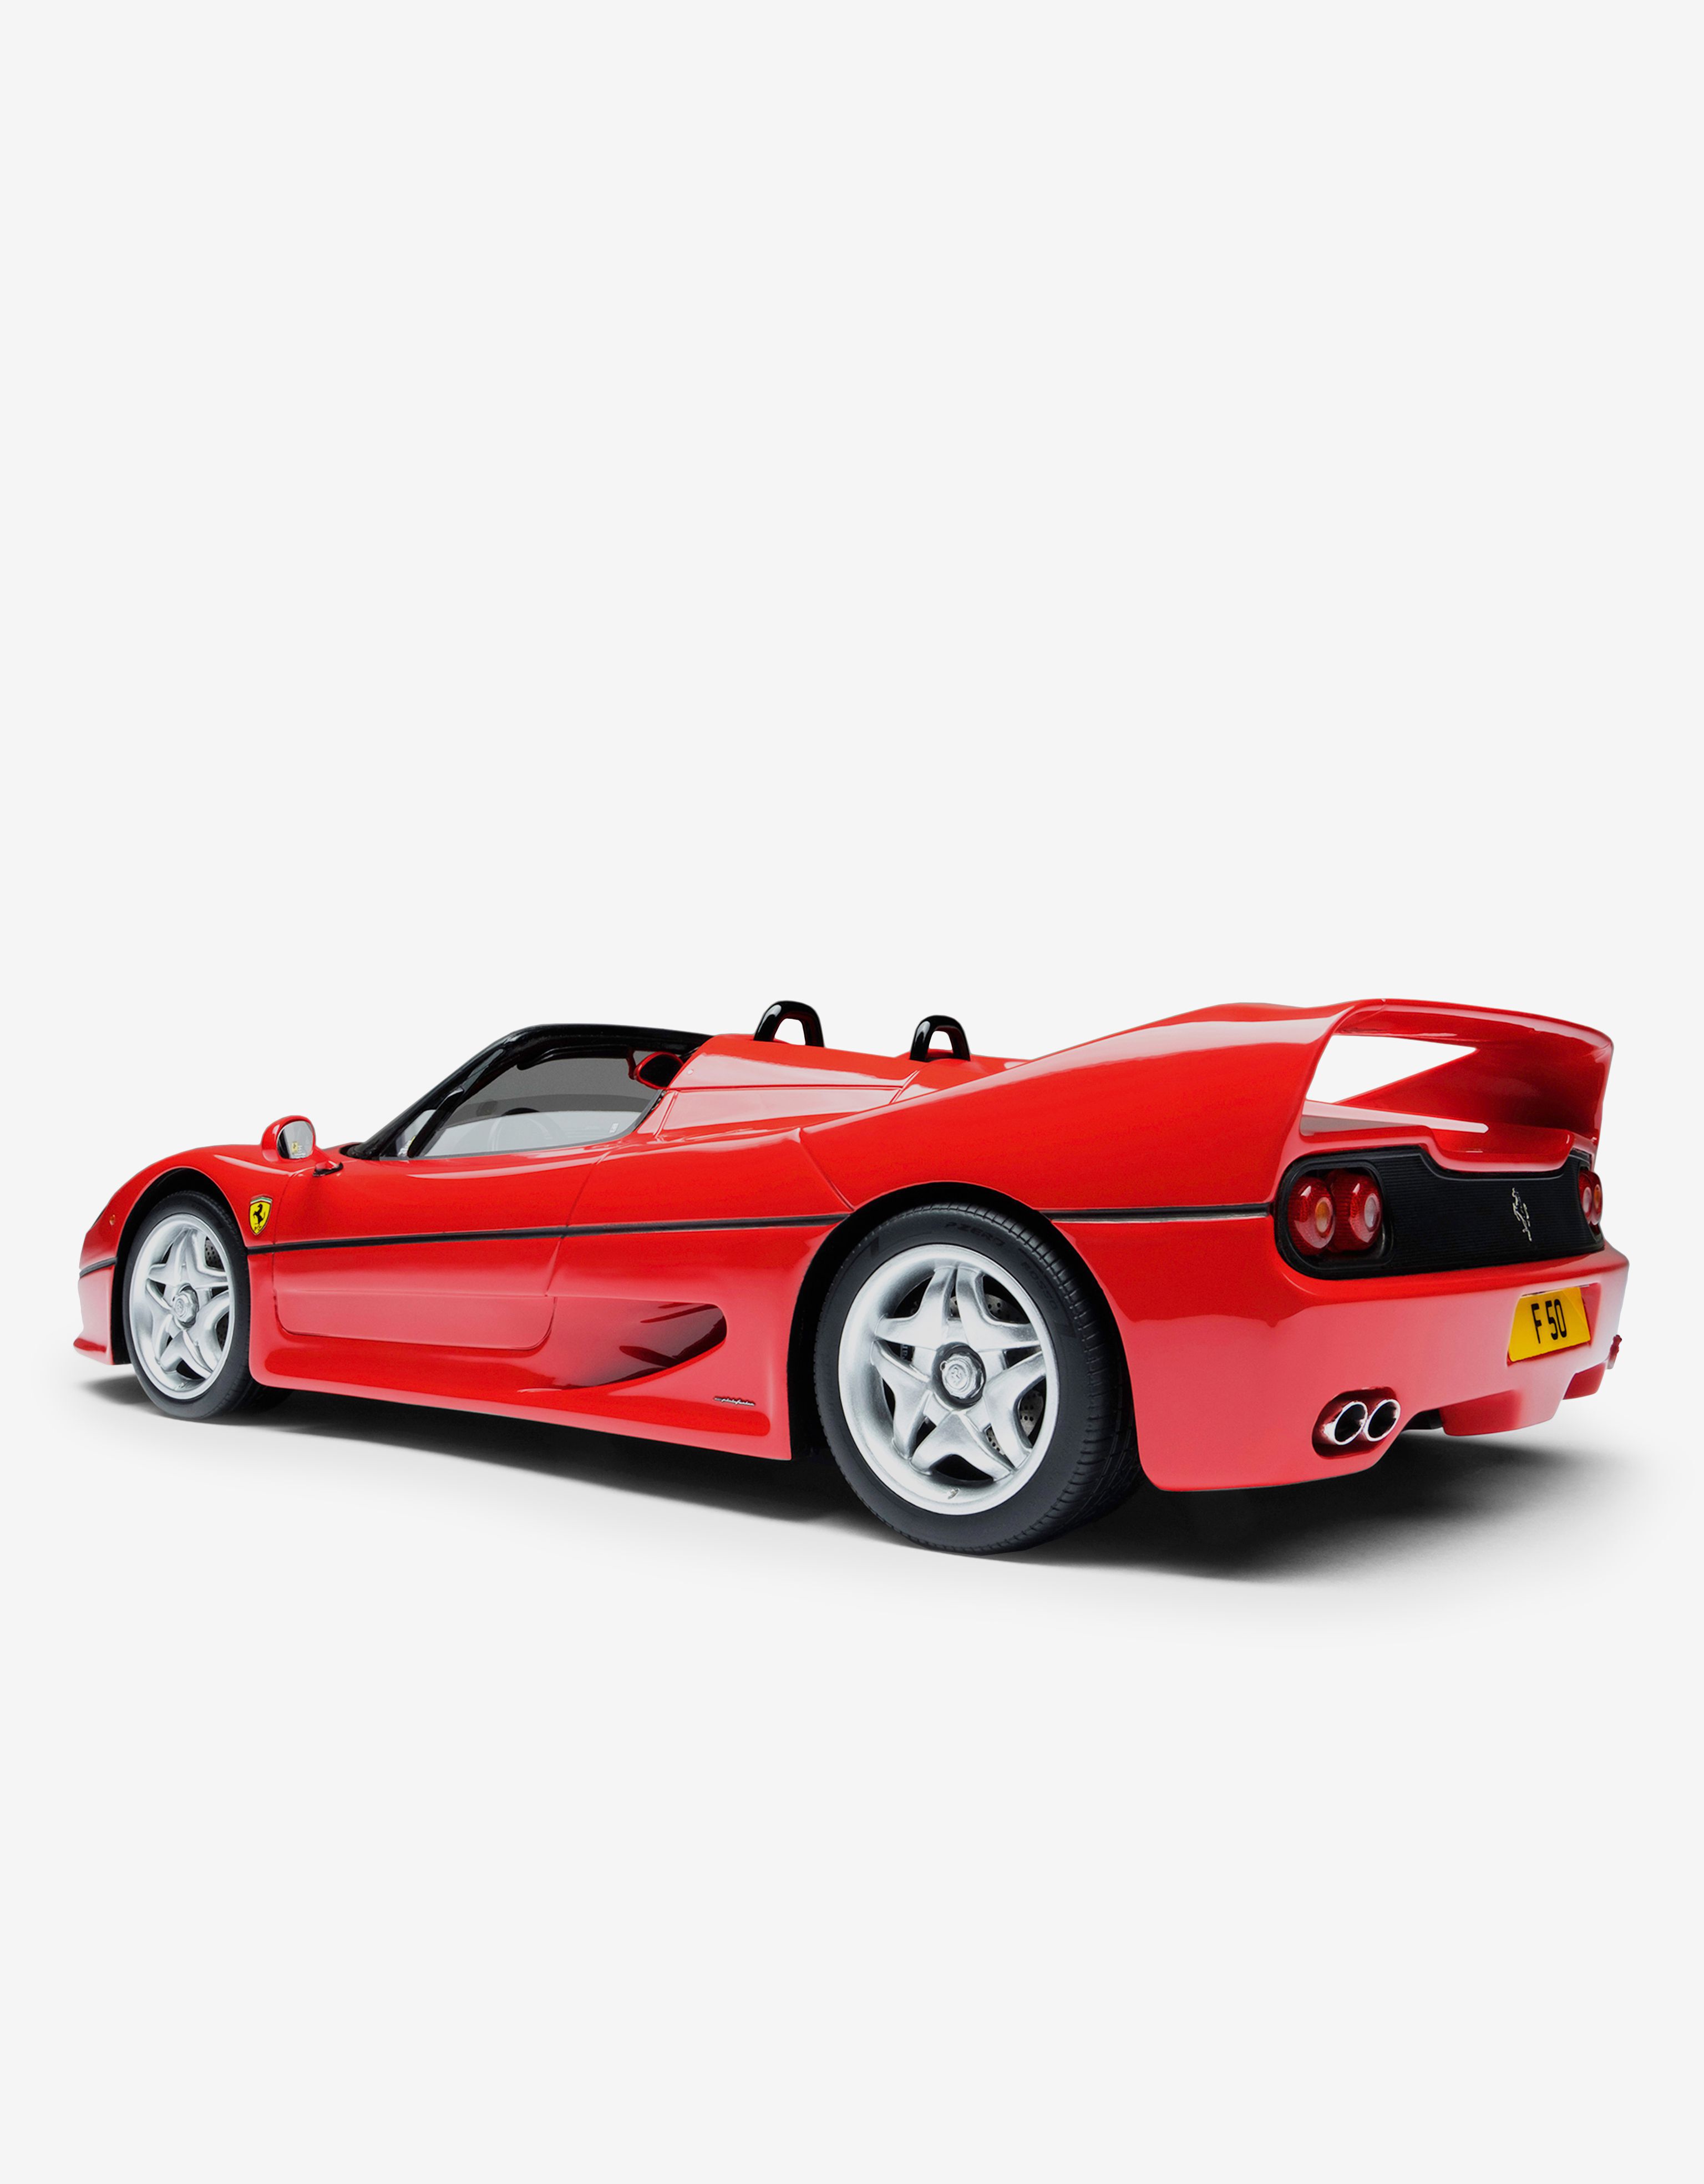 Ferrari Modellauto Ferrari F50 im Maßstab 1:18 Rot L7582f